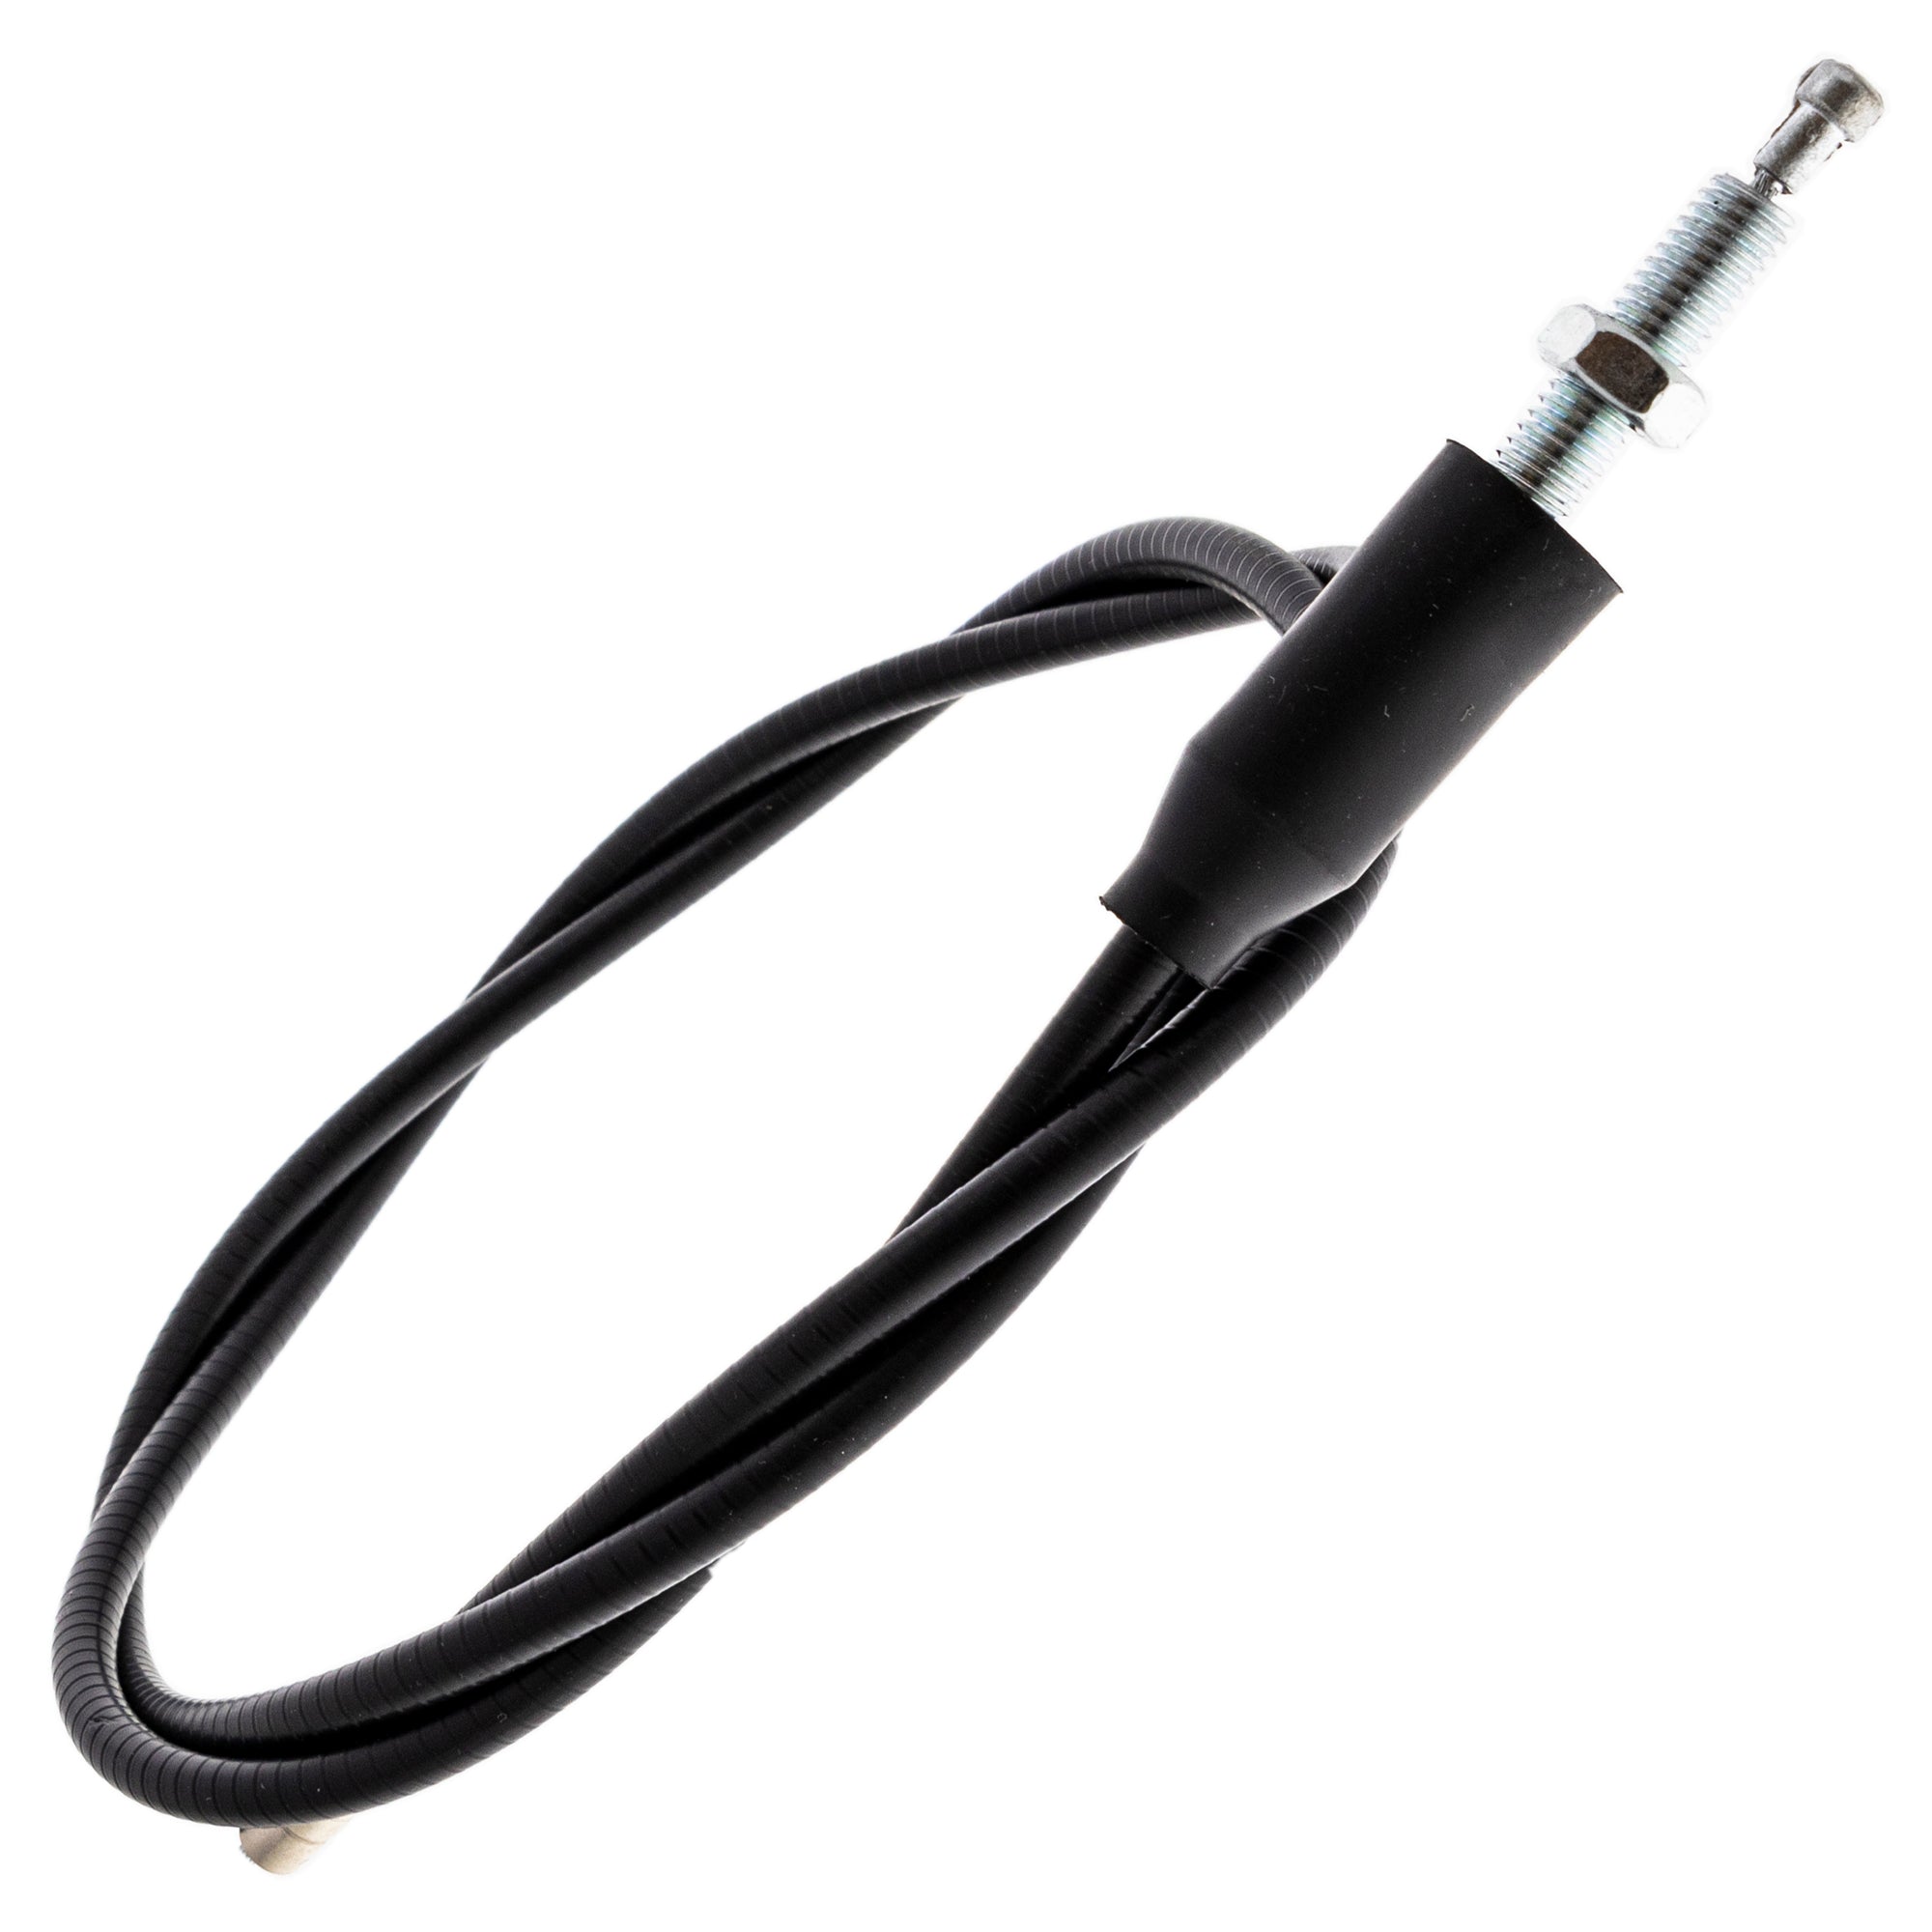 Clutch Cable for Suzuki RV90 TC125 TS125 58200-07711 58200-28000